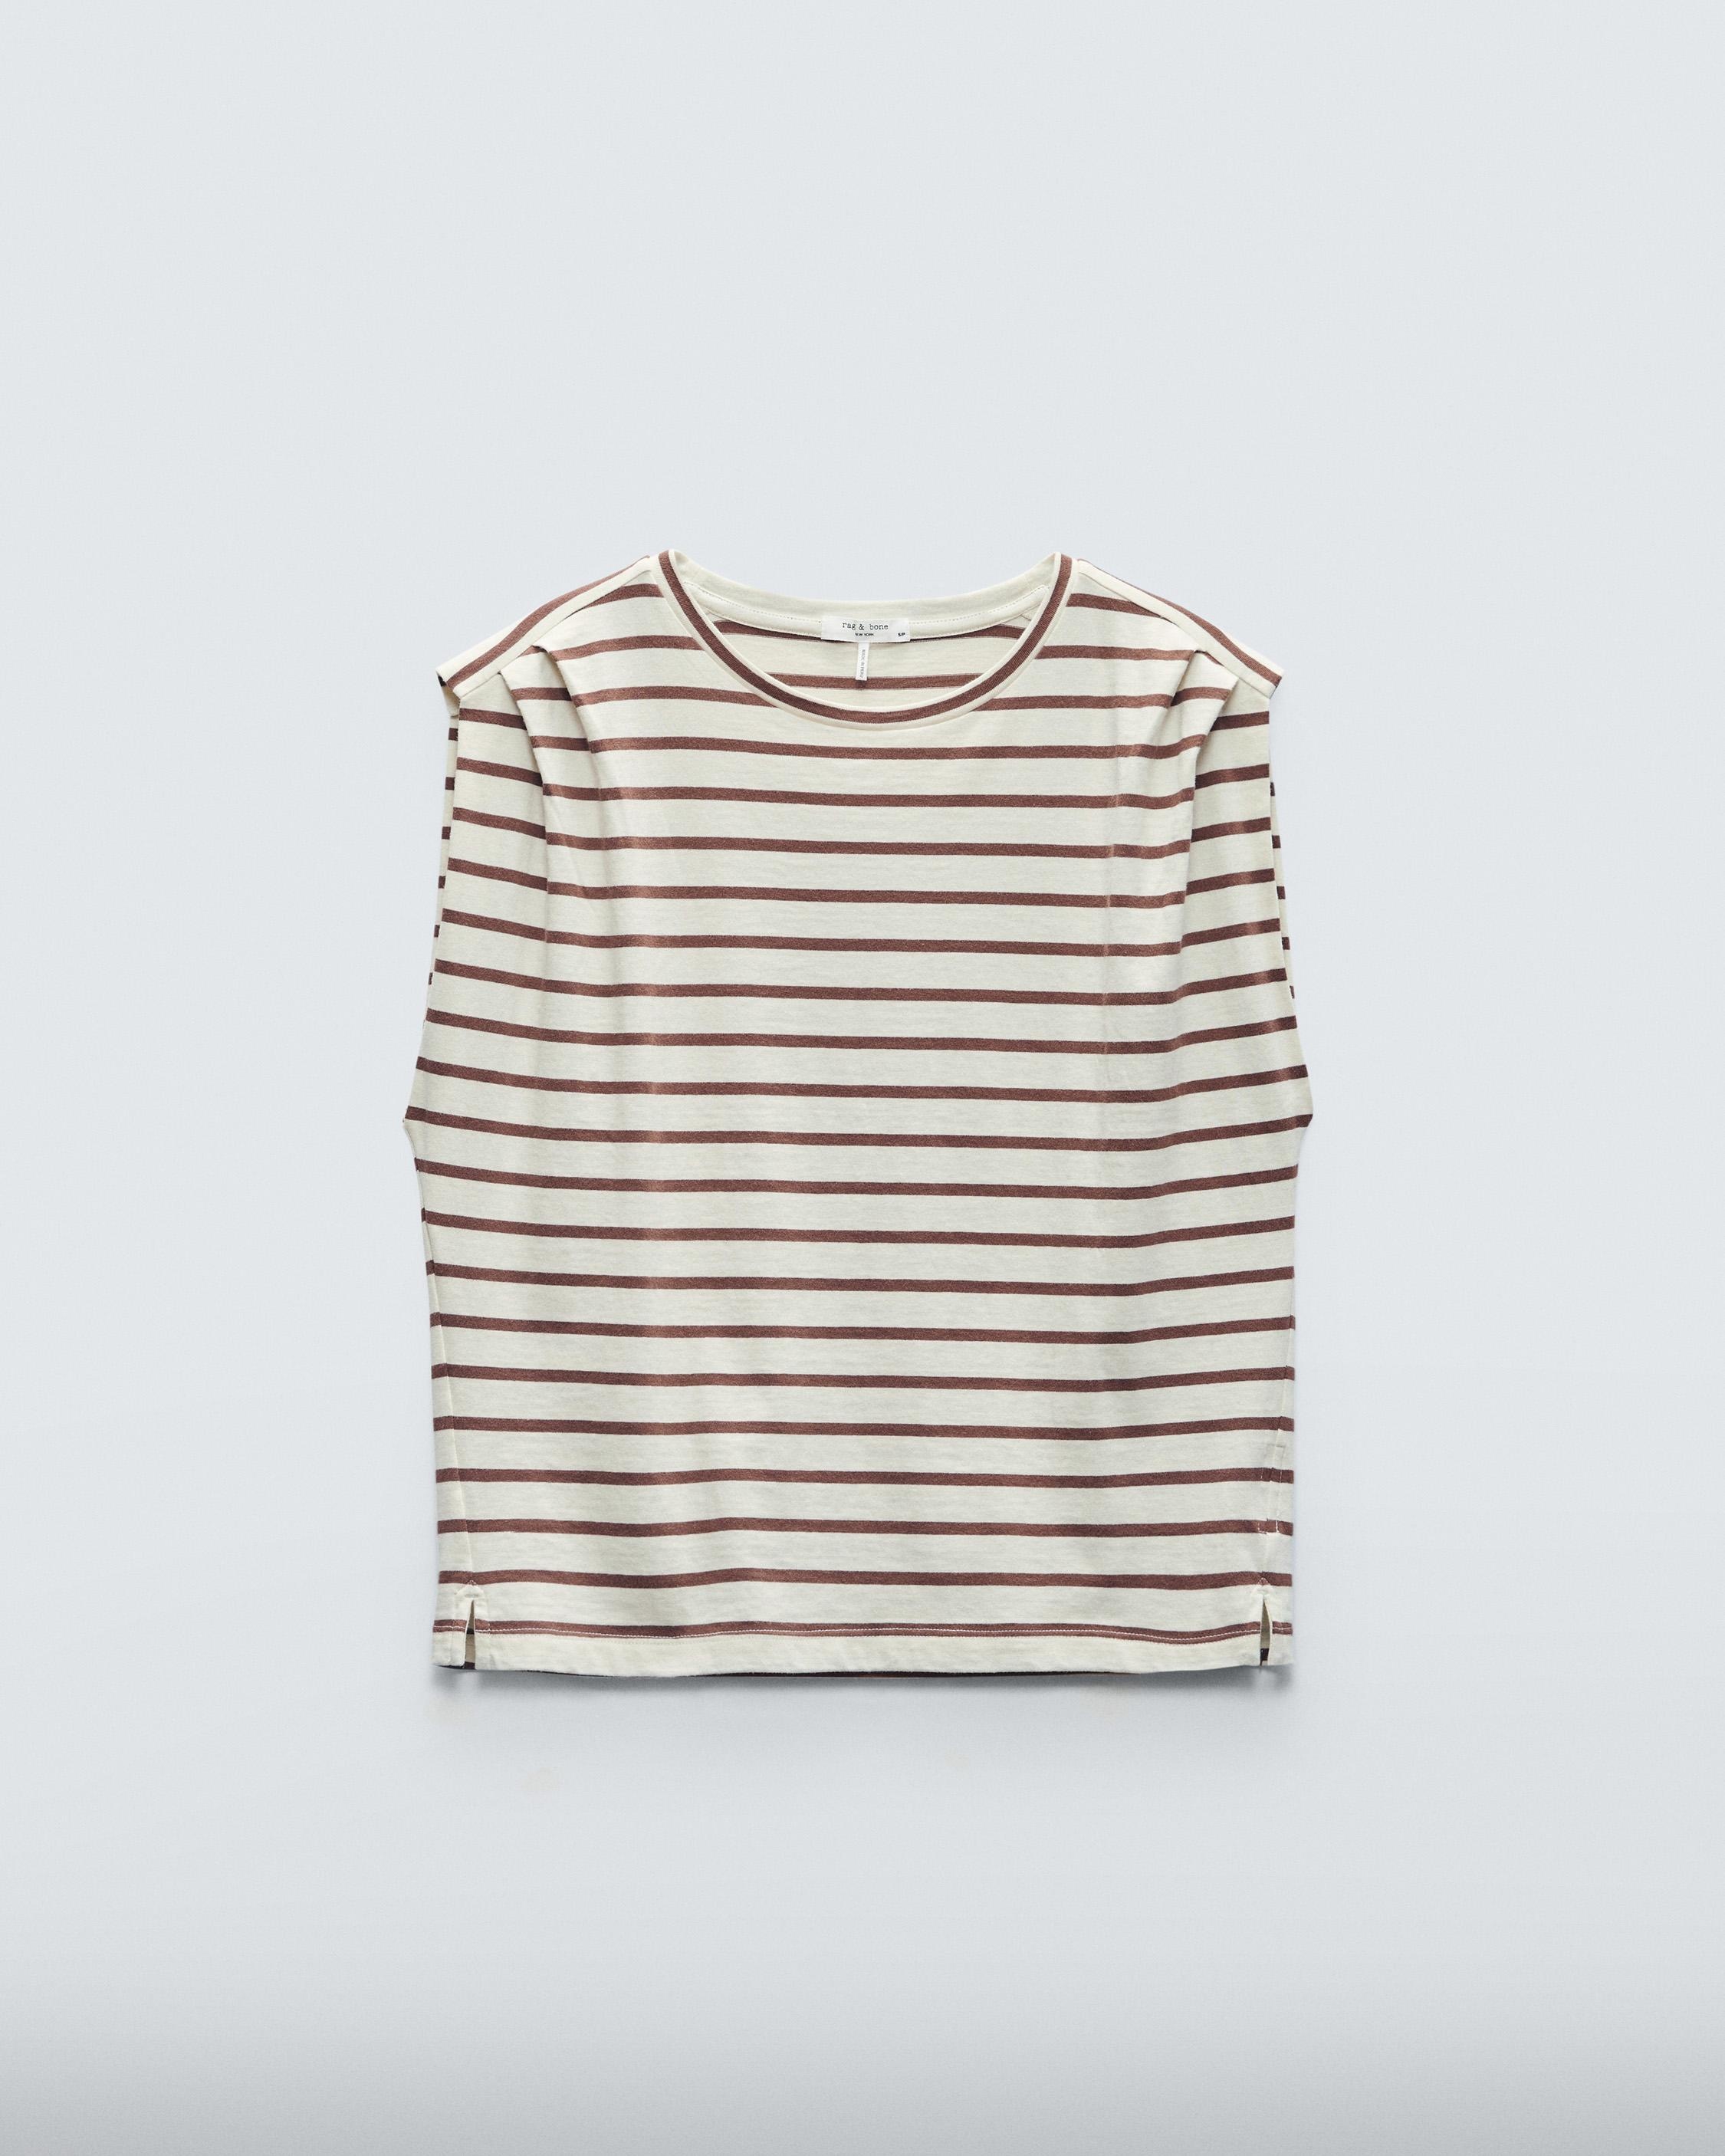 Mica Striped Tank
Cotton T-Shirt - 1